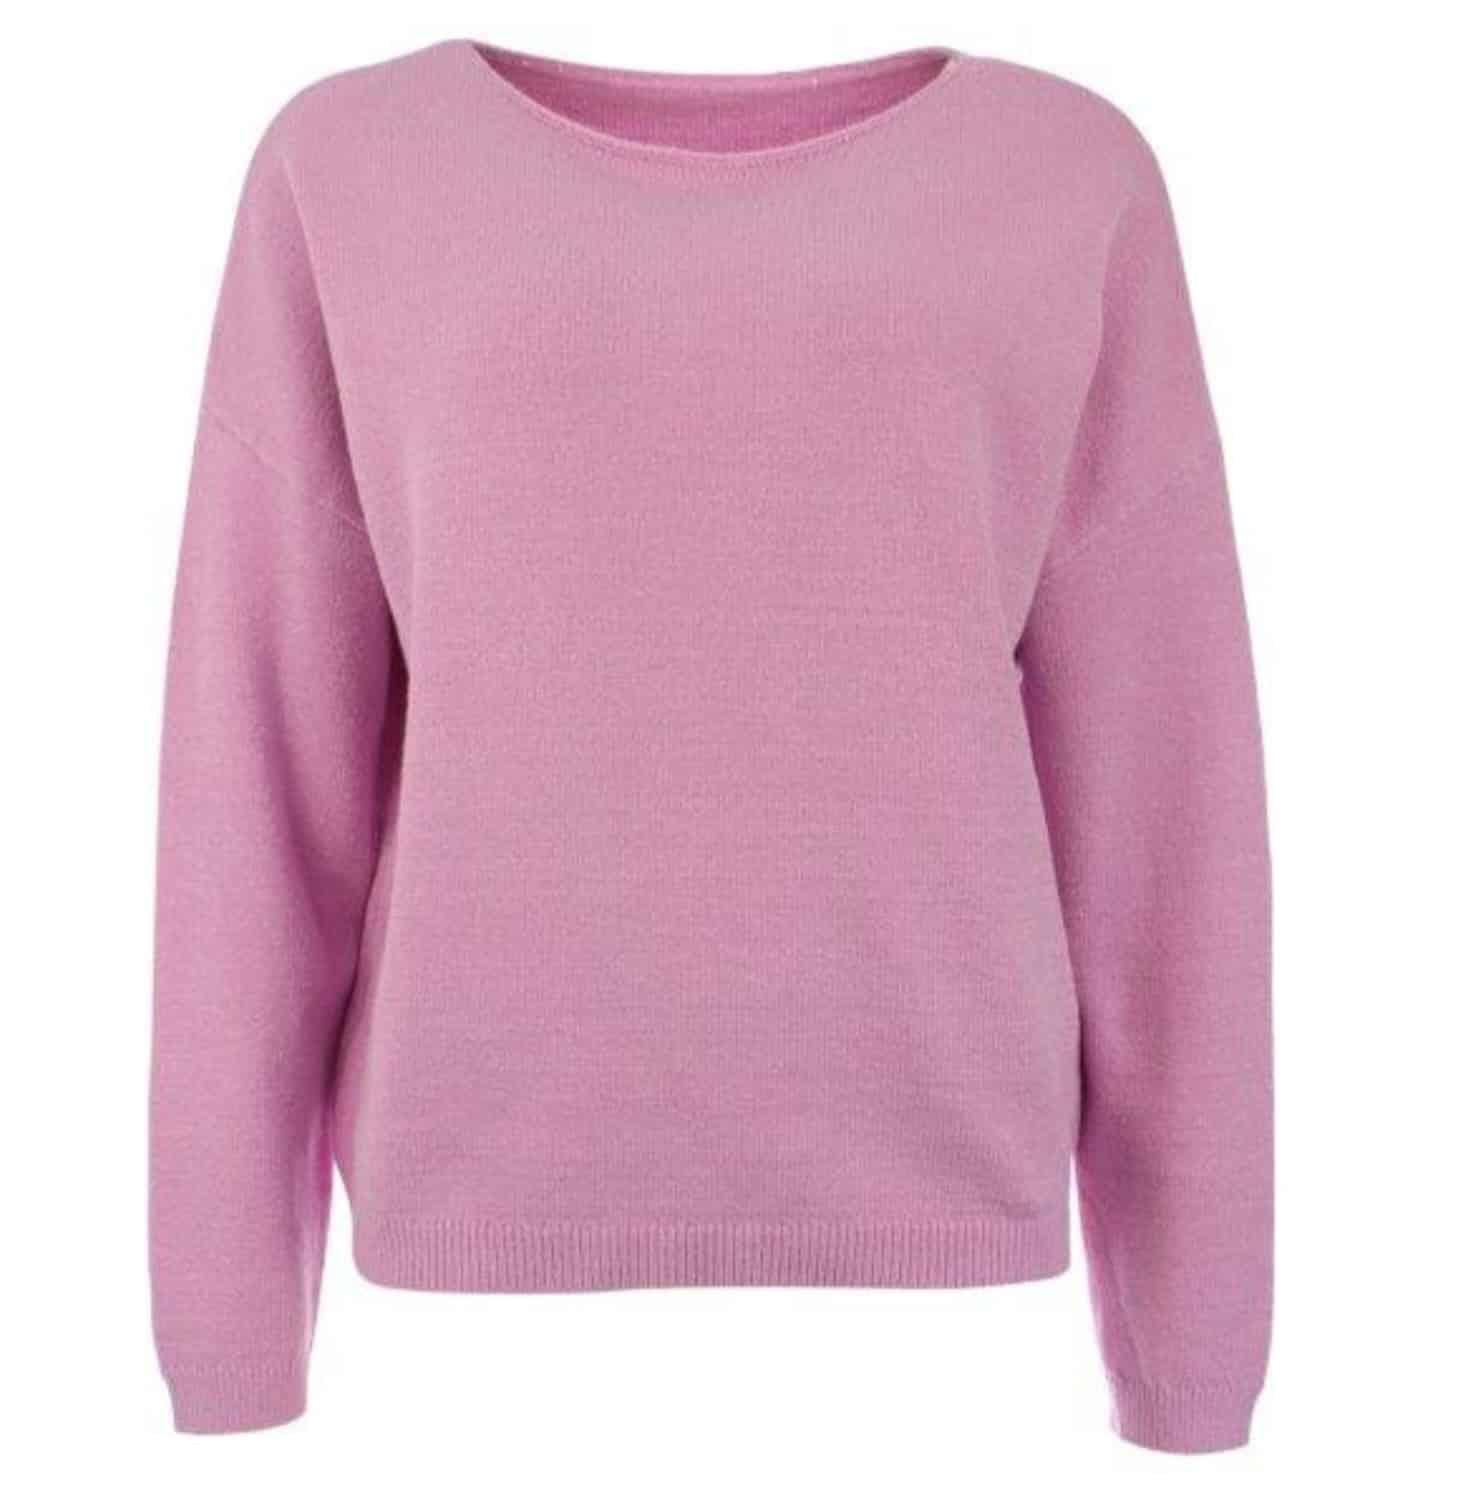 Klassischer Pullover von Kenny S in zartem rosa mit Bateau Ausschnitt bei Mode Sabine Lemke in Winnenden im Remstal oder im Onlinshop shoppen